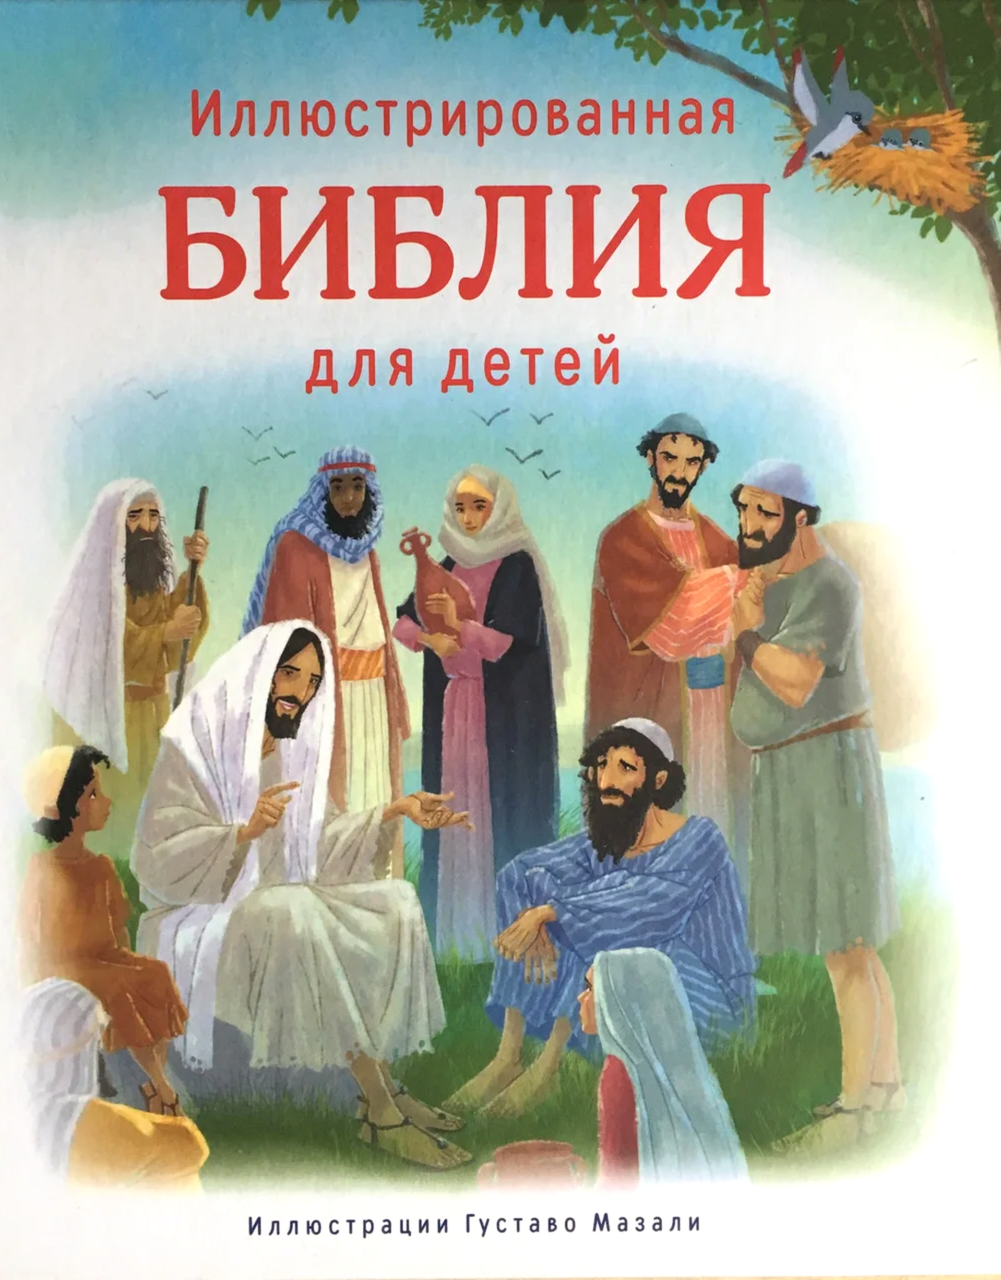 Ілюстрована Біблія для дітей. Ілюстрації Густаво Мазали